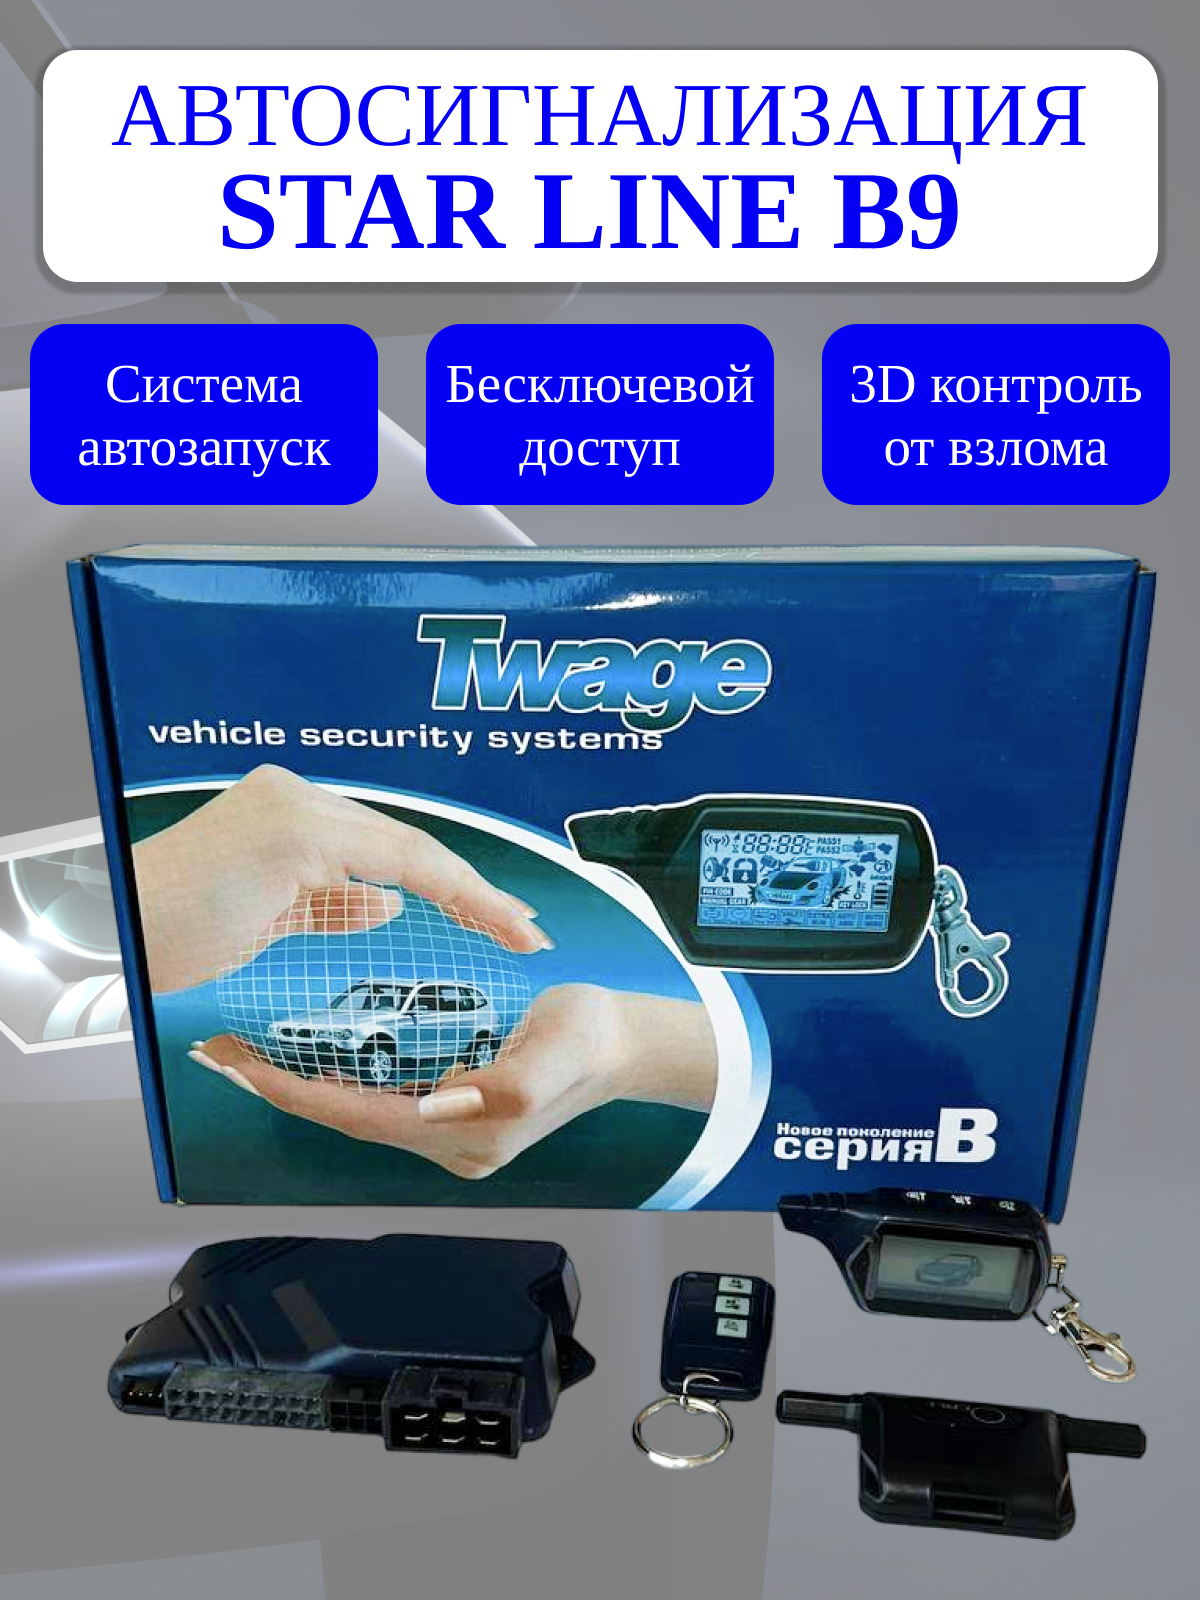 Автосигнализация FLT B9 комплект совместимая с StarLine B9